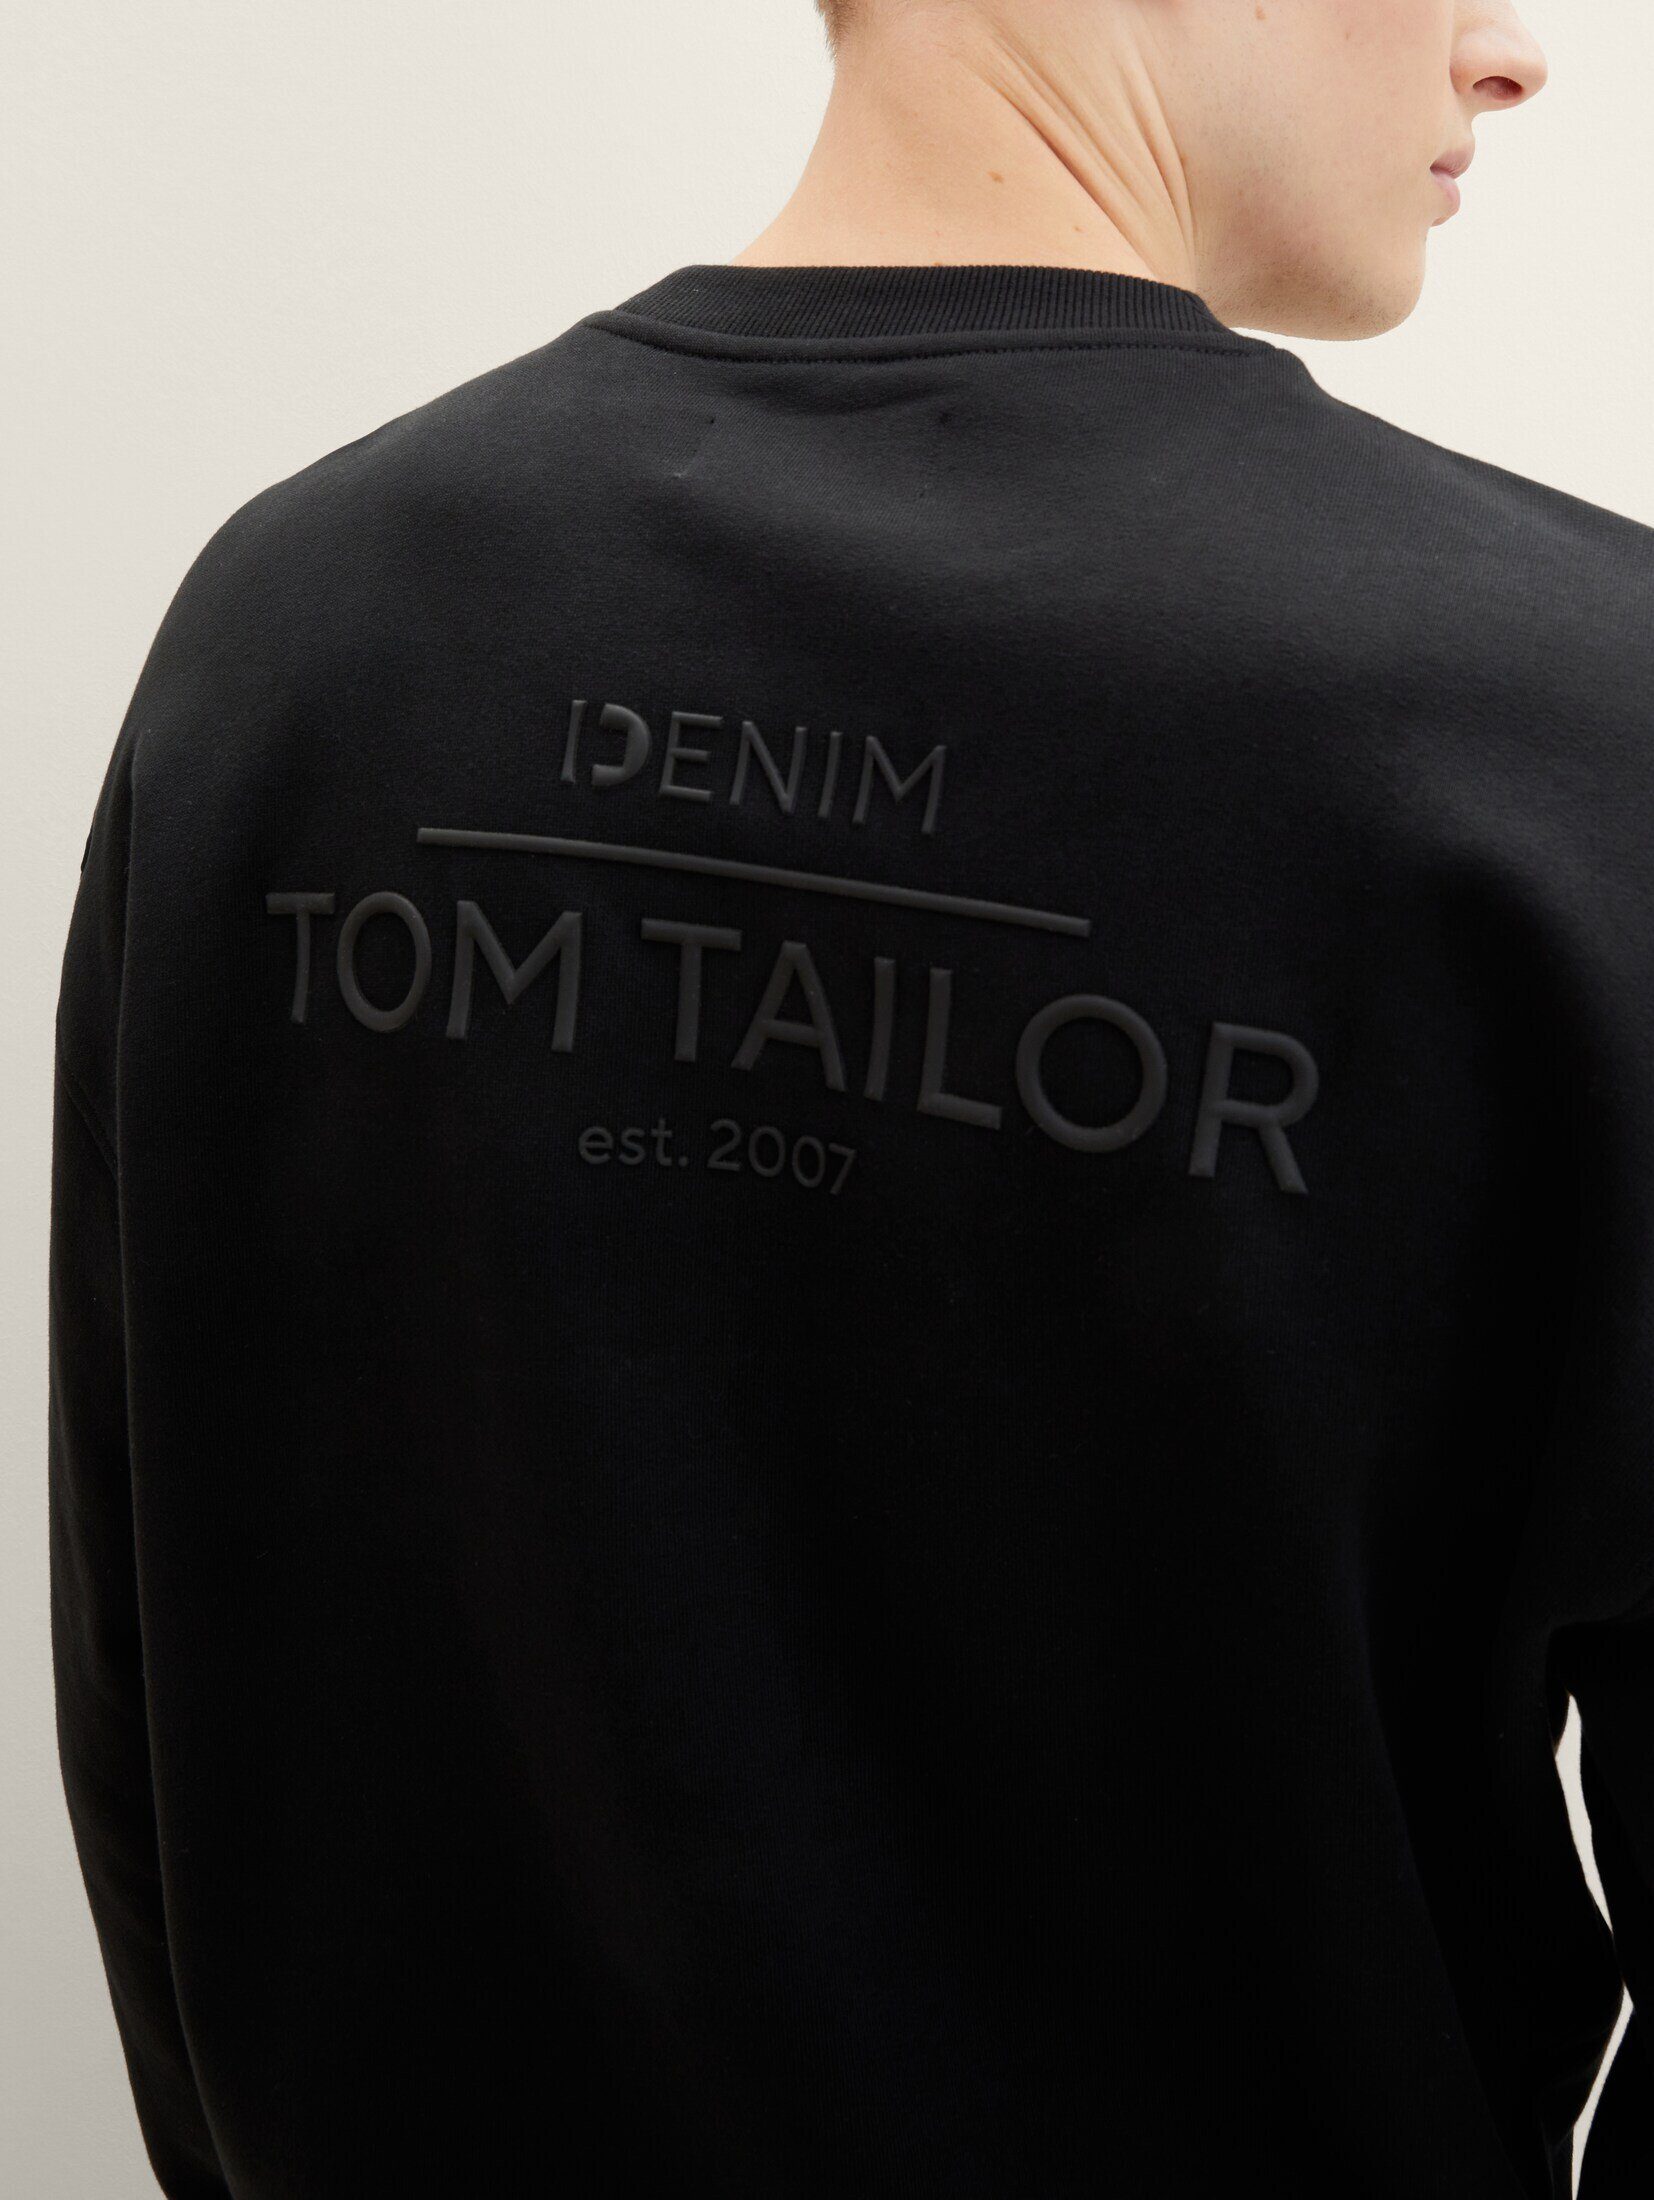 TOM TAILOR Denim Hoodie Black Relaxed Sweatshirt